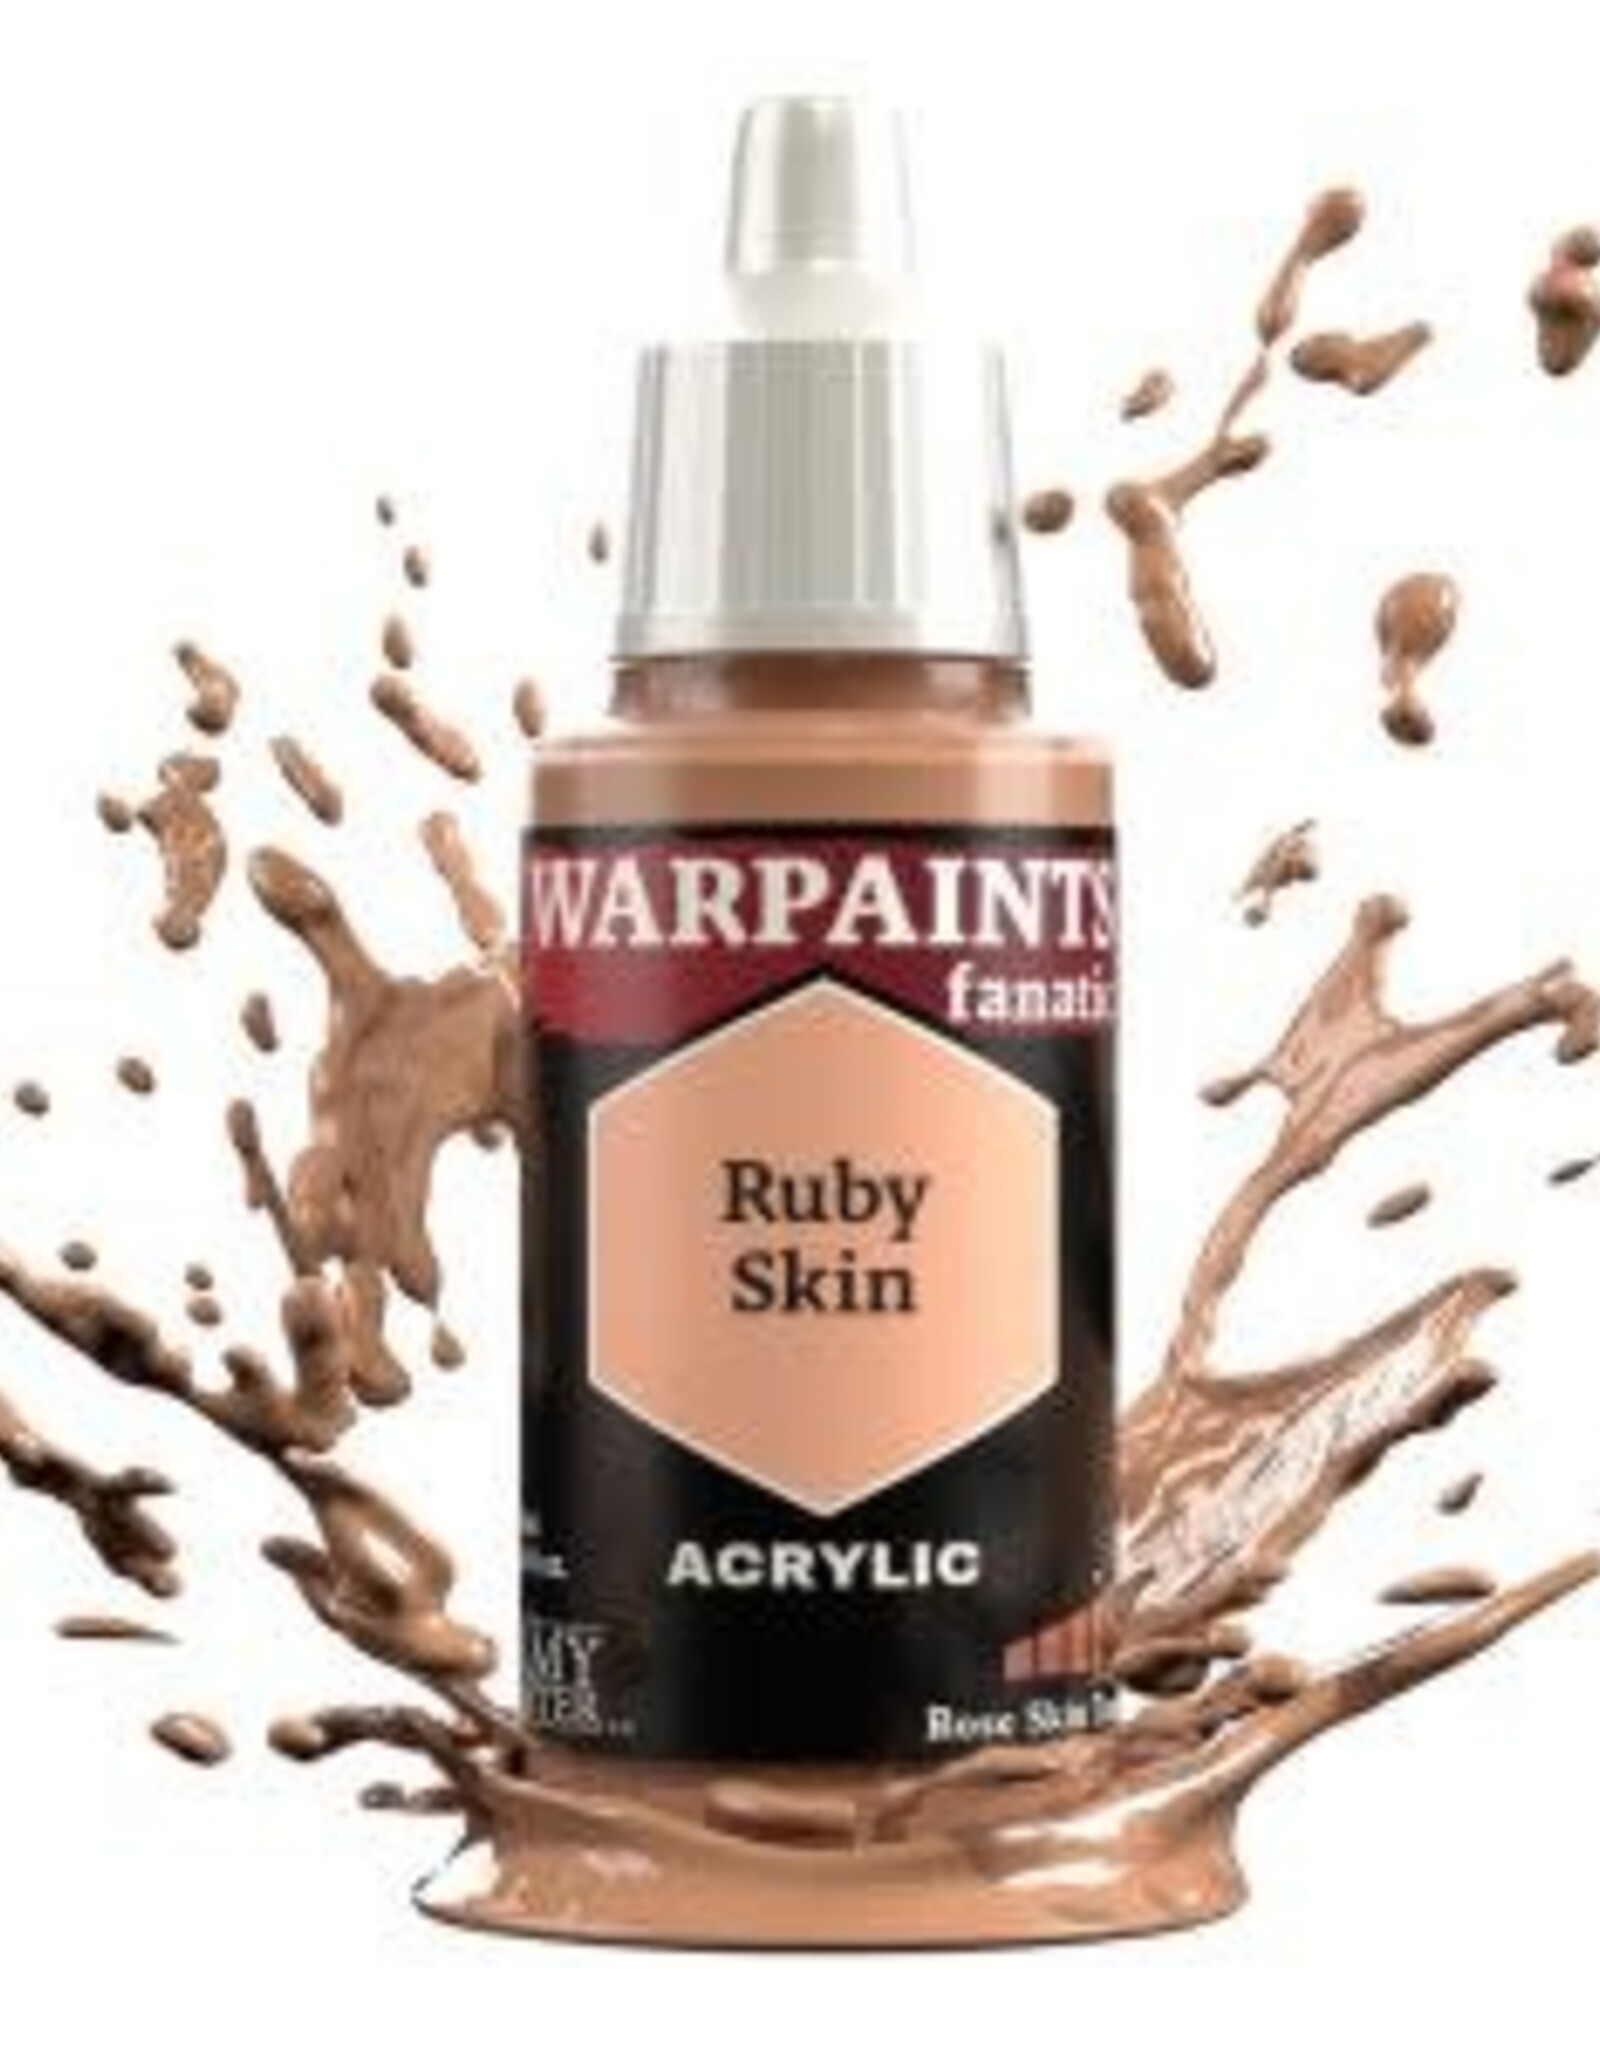 Warpaints Fanatic: Ruby Skin